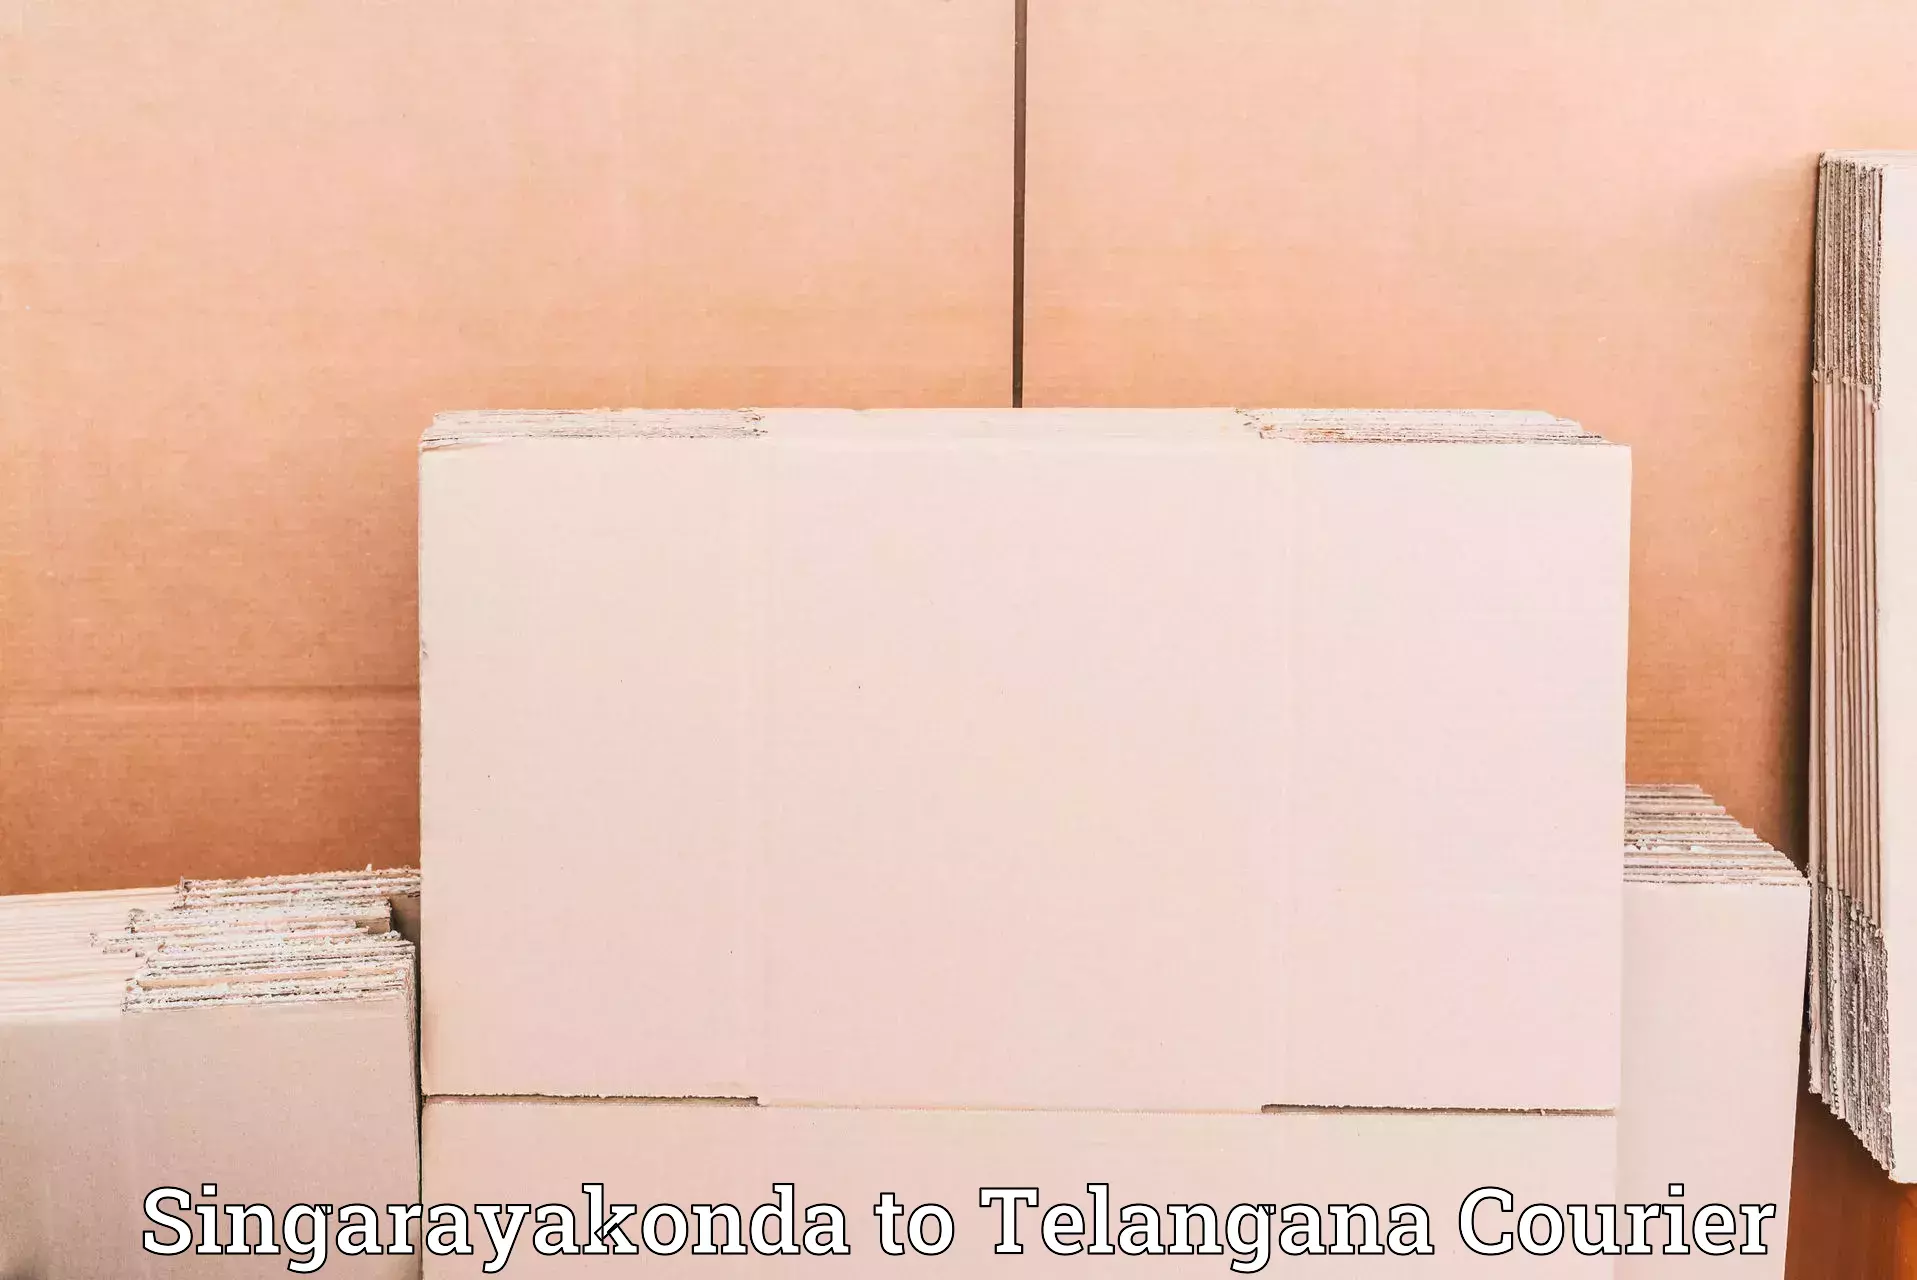 Multi-service courier options Singarayakonda to Alair